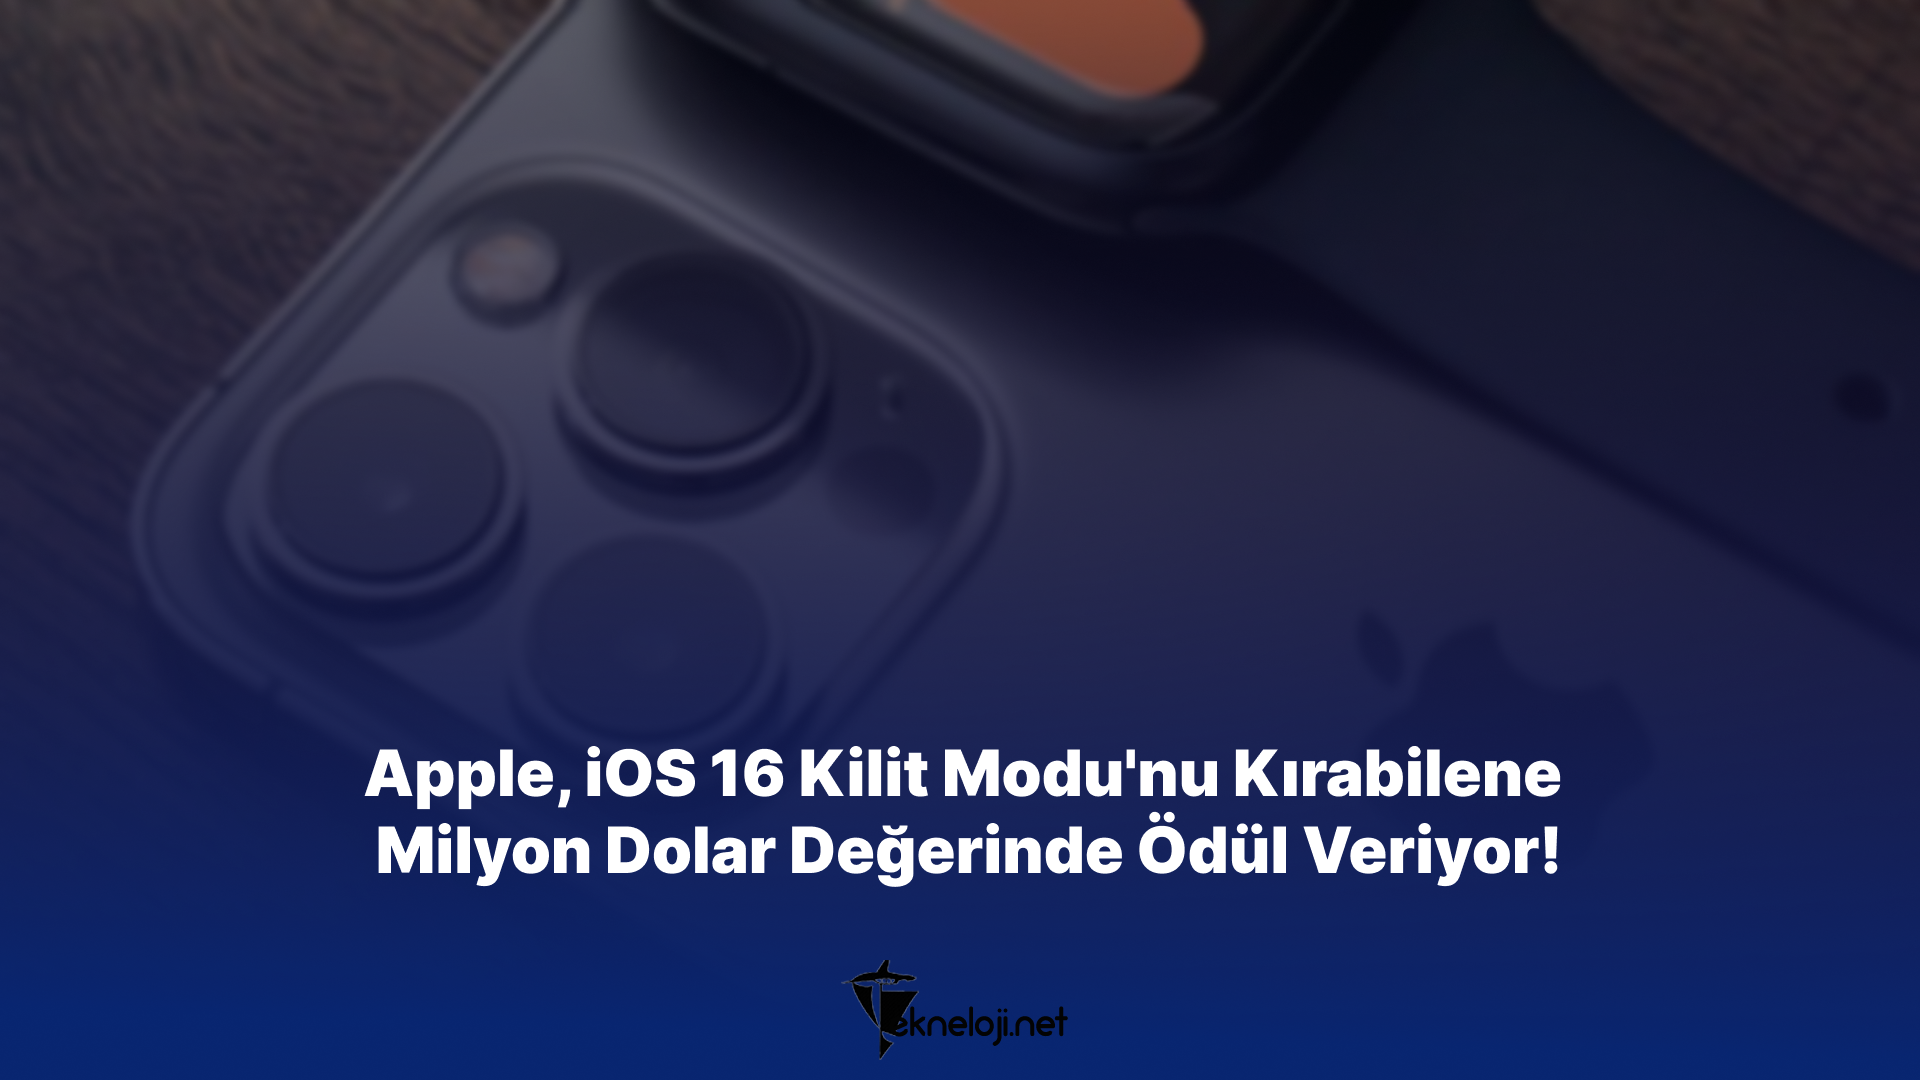 Apple, iOS 16 Kilit Modu’nu Kırabilene Milyon Dolar Değerinde Ödül Veriyor!